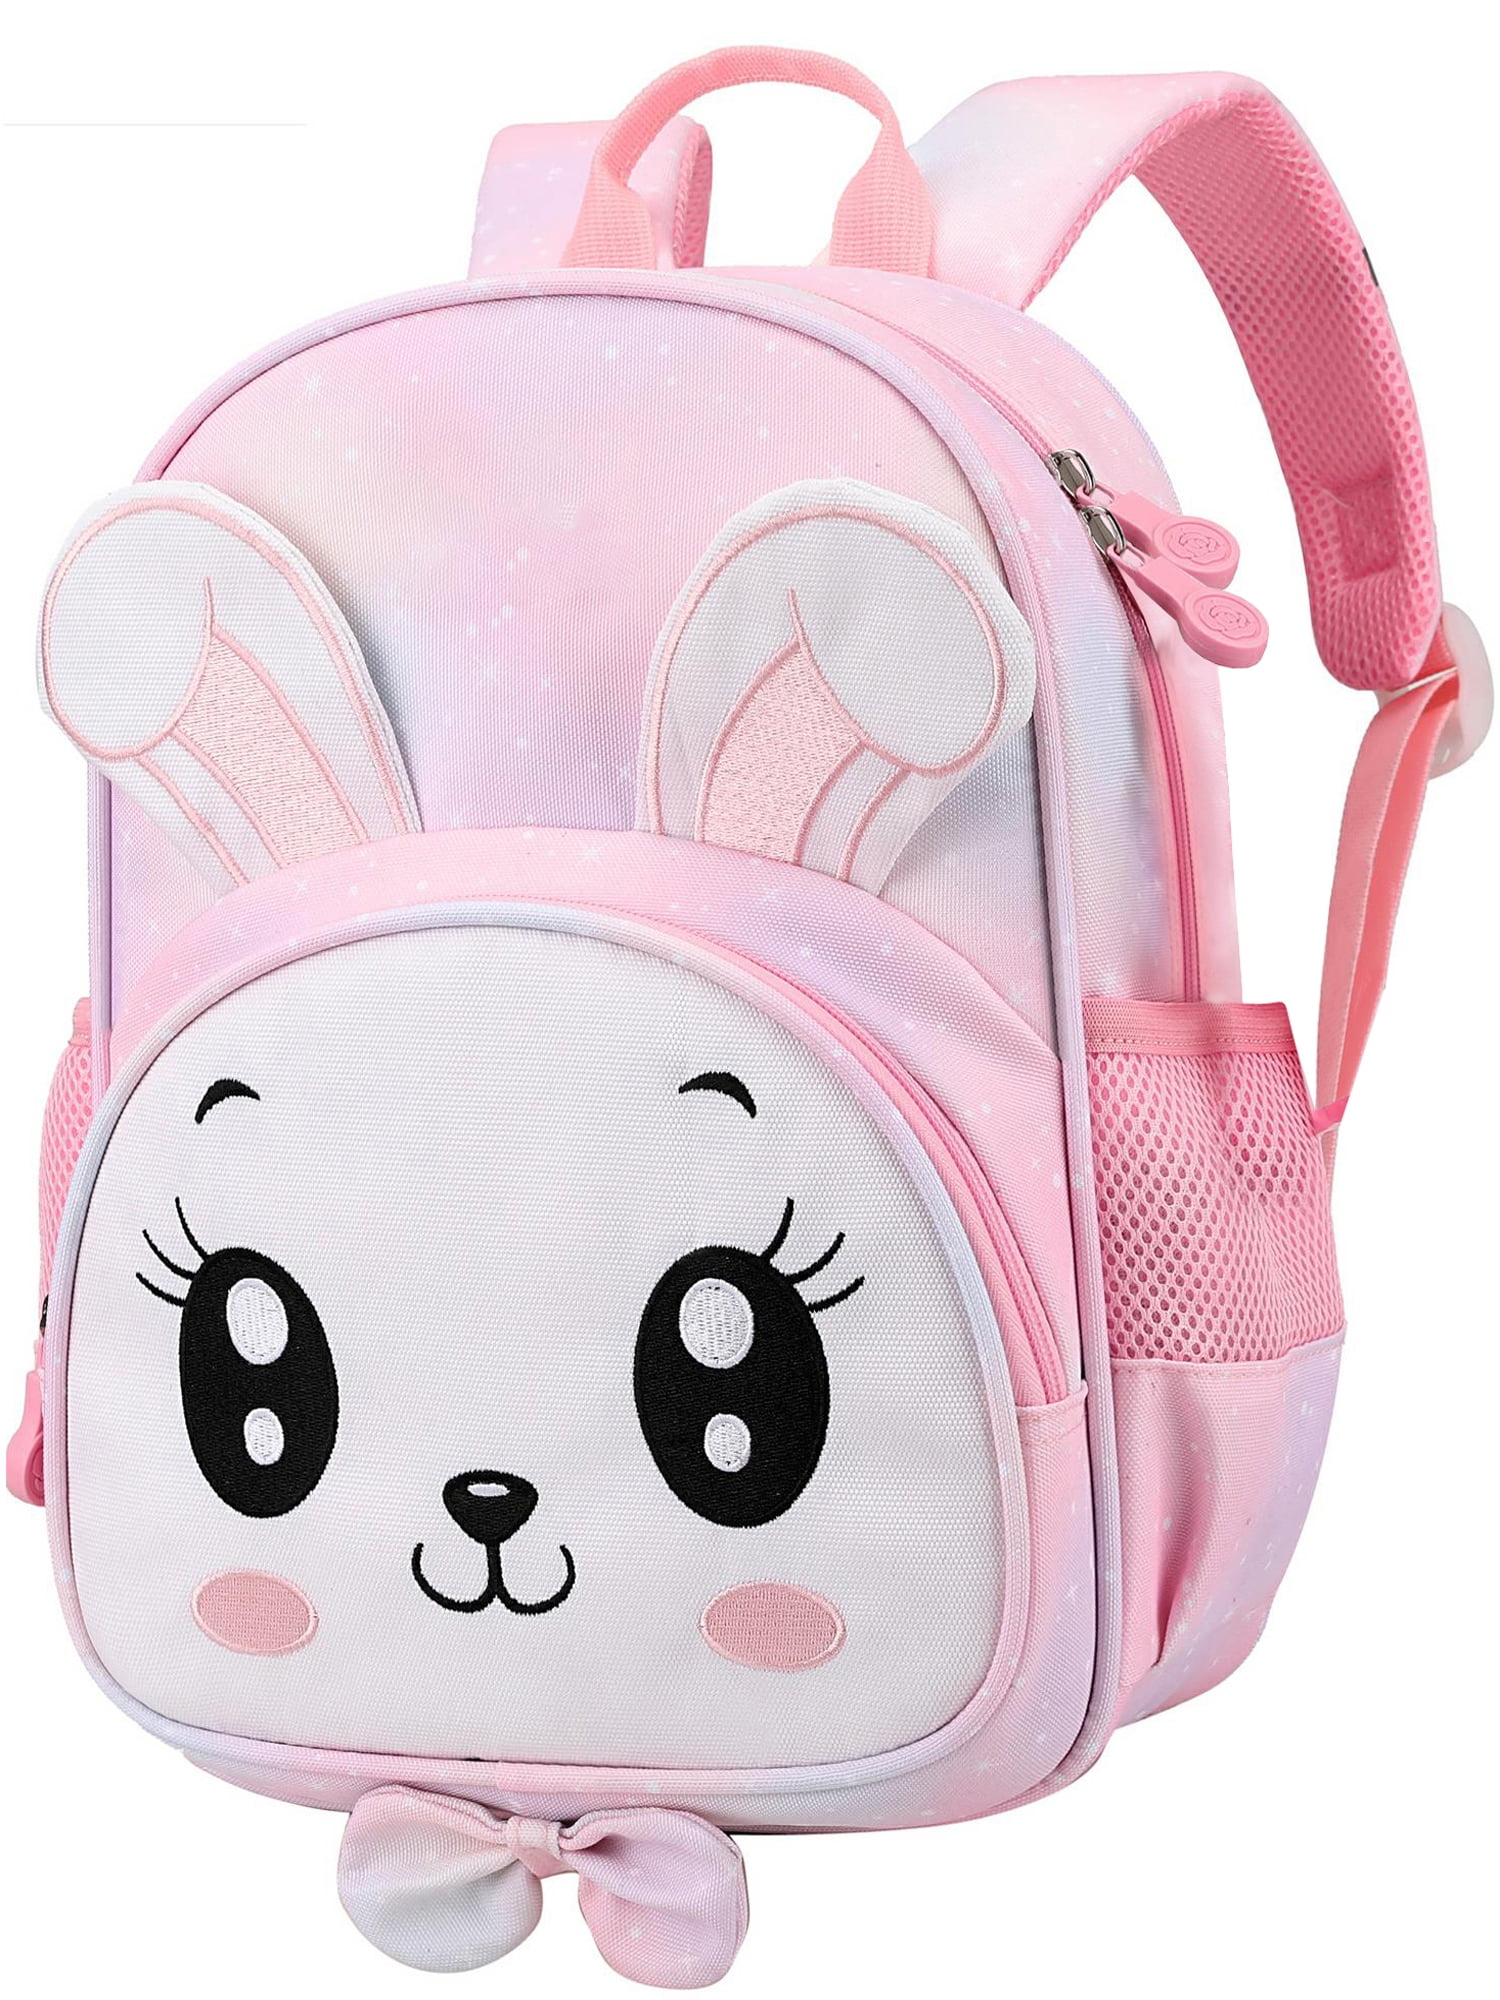 School Backpacks for Girls, Kids & Toddler